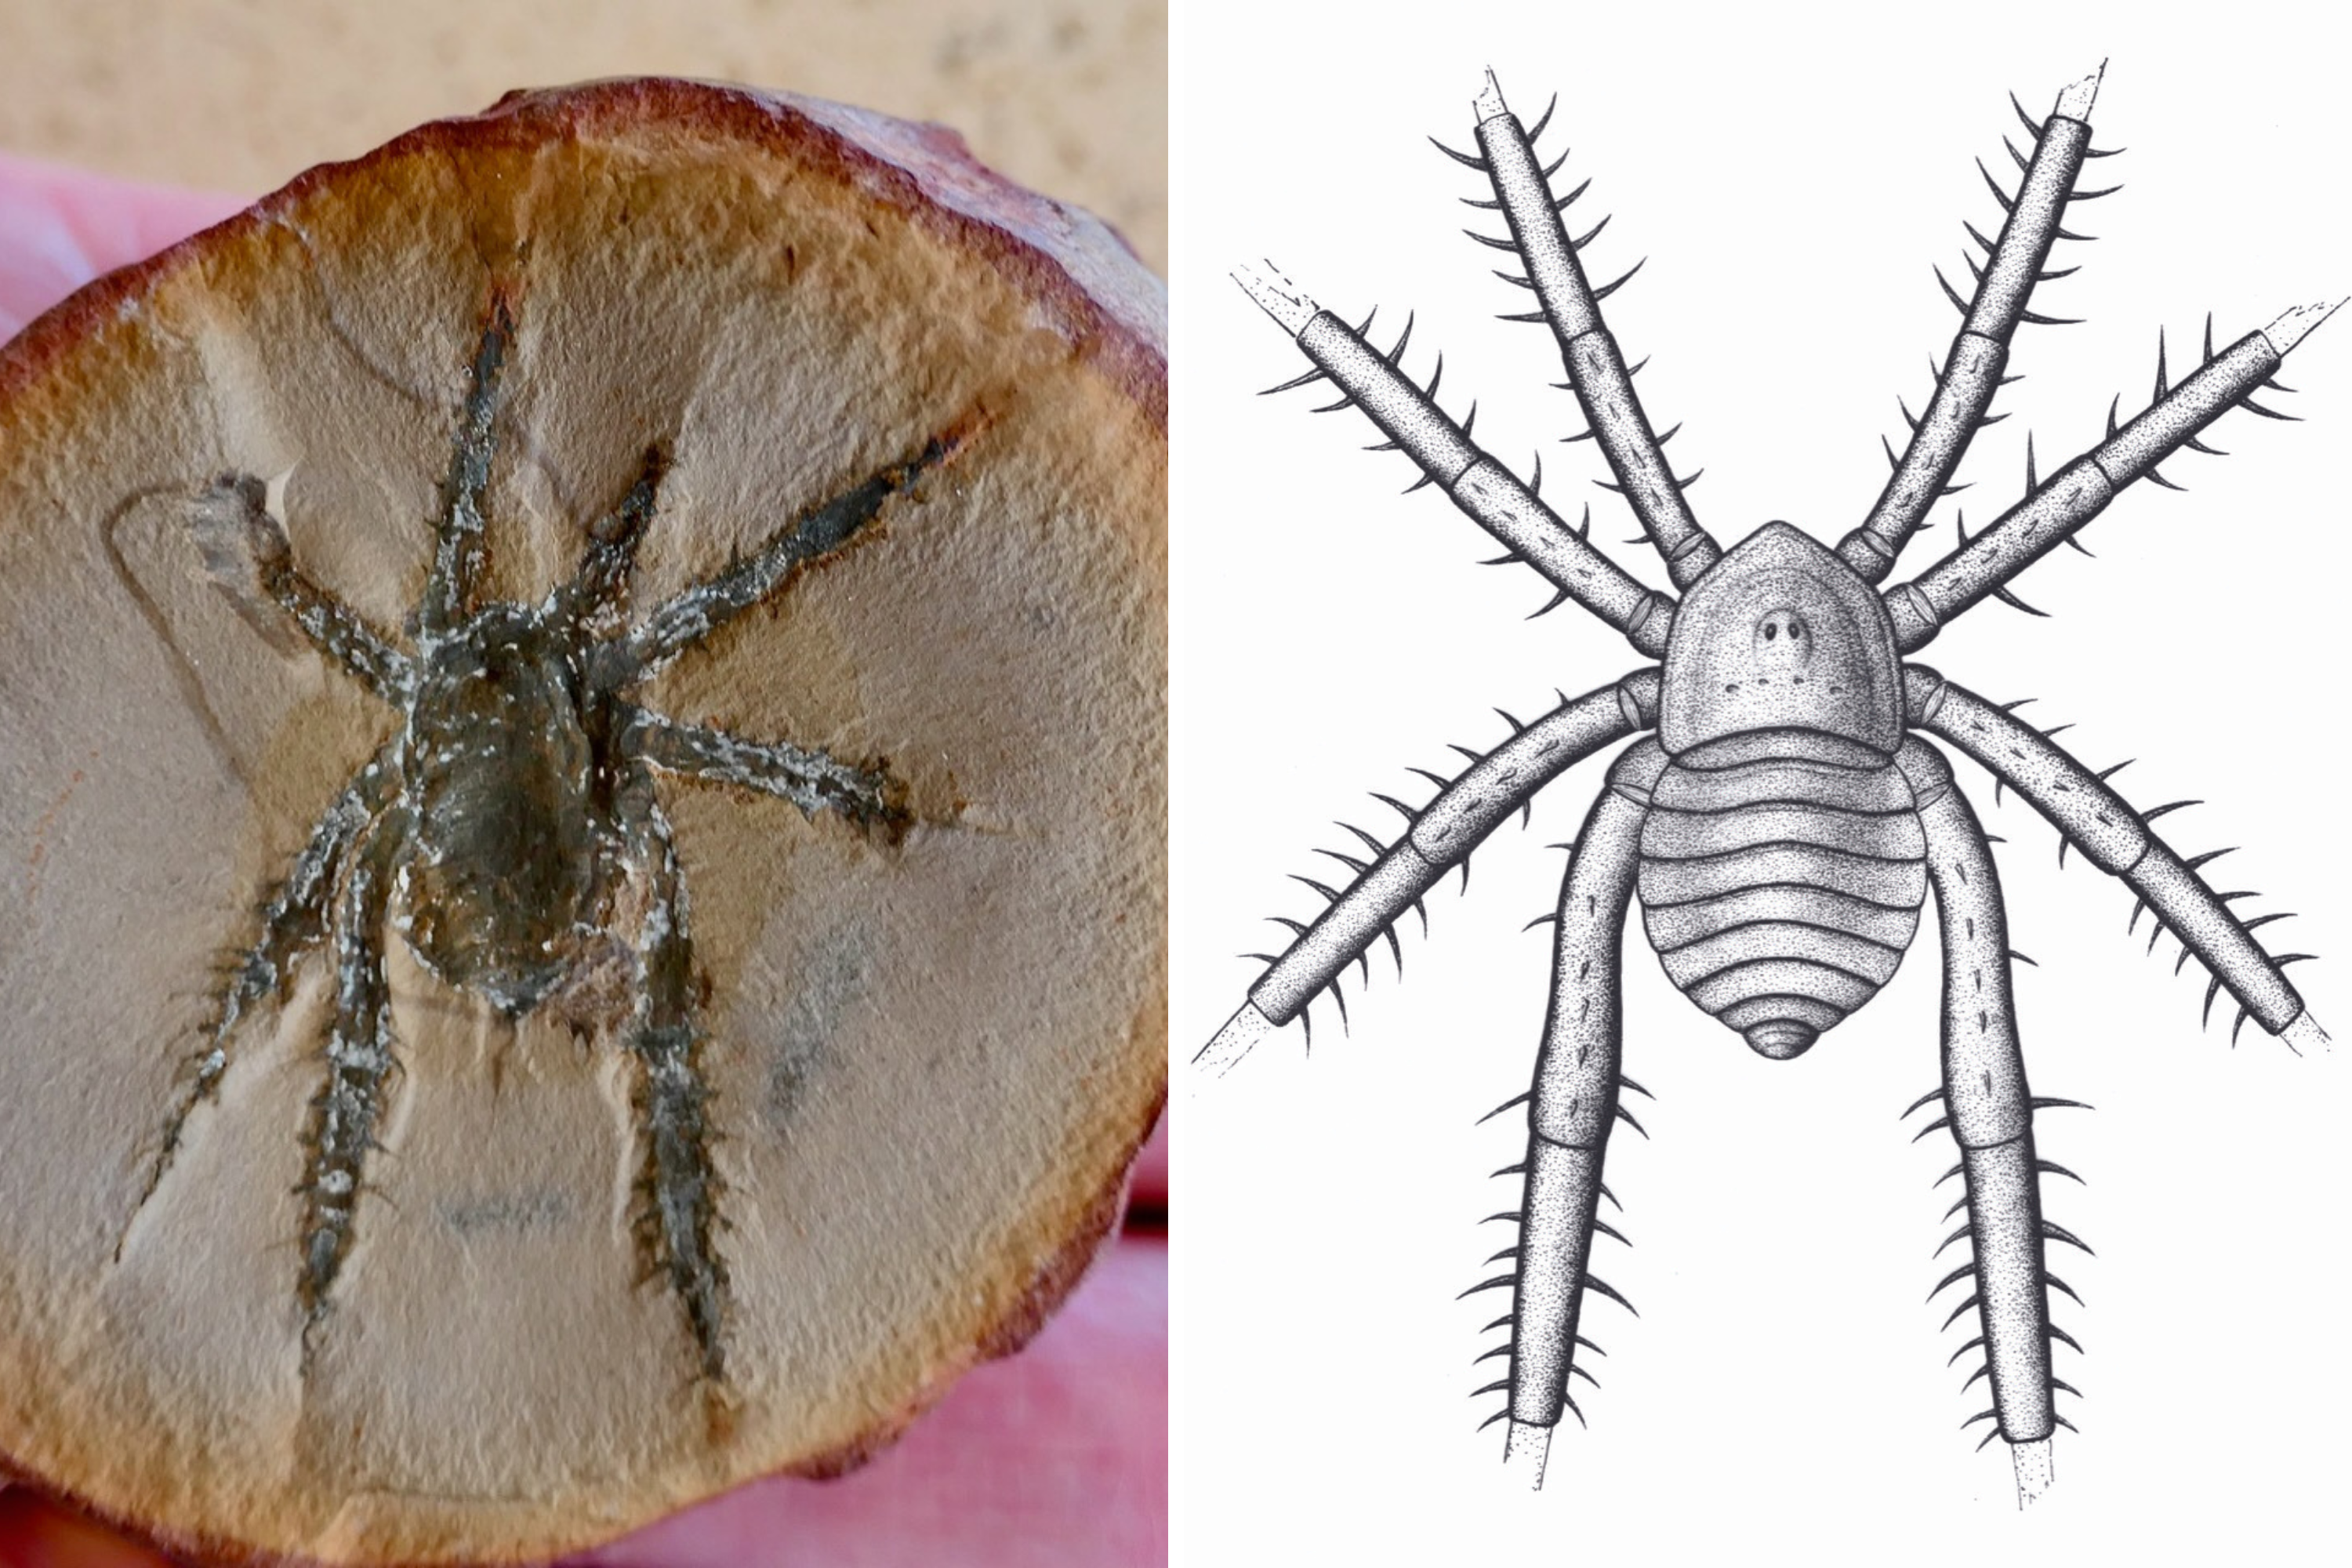 Découverte d’un arachnide préhistorique à pattes épineuses de l’Illinois